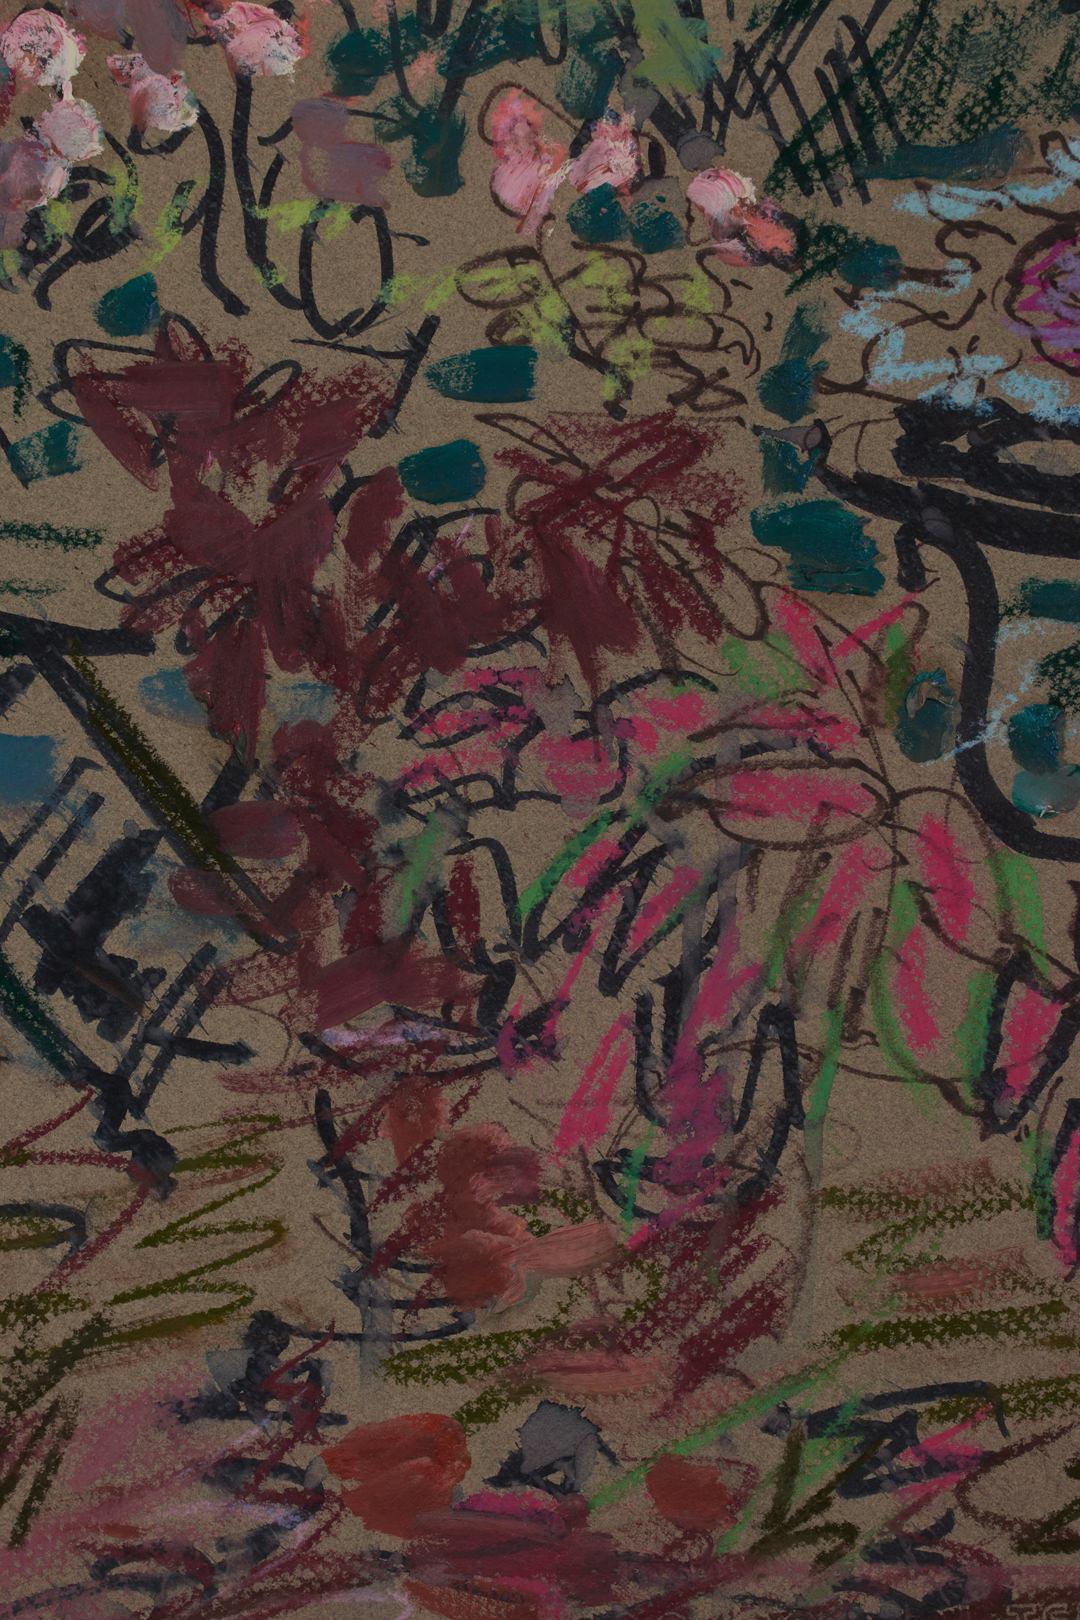 Stillleben ohne Titel des 20. Jahrhunderts mit Tisch und Blumen von Künstler der Cleveland School  – Painting von Joseph O'Sickey